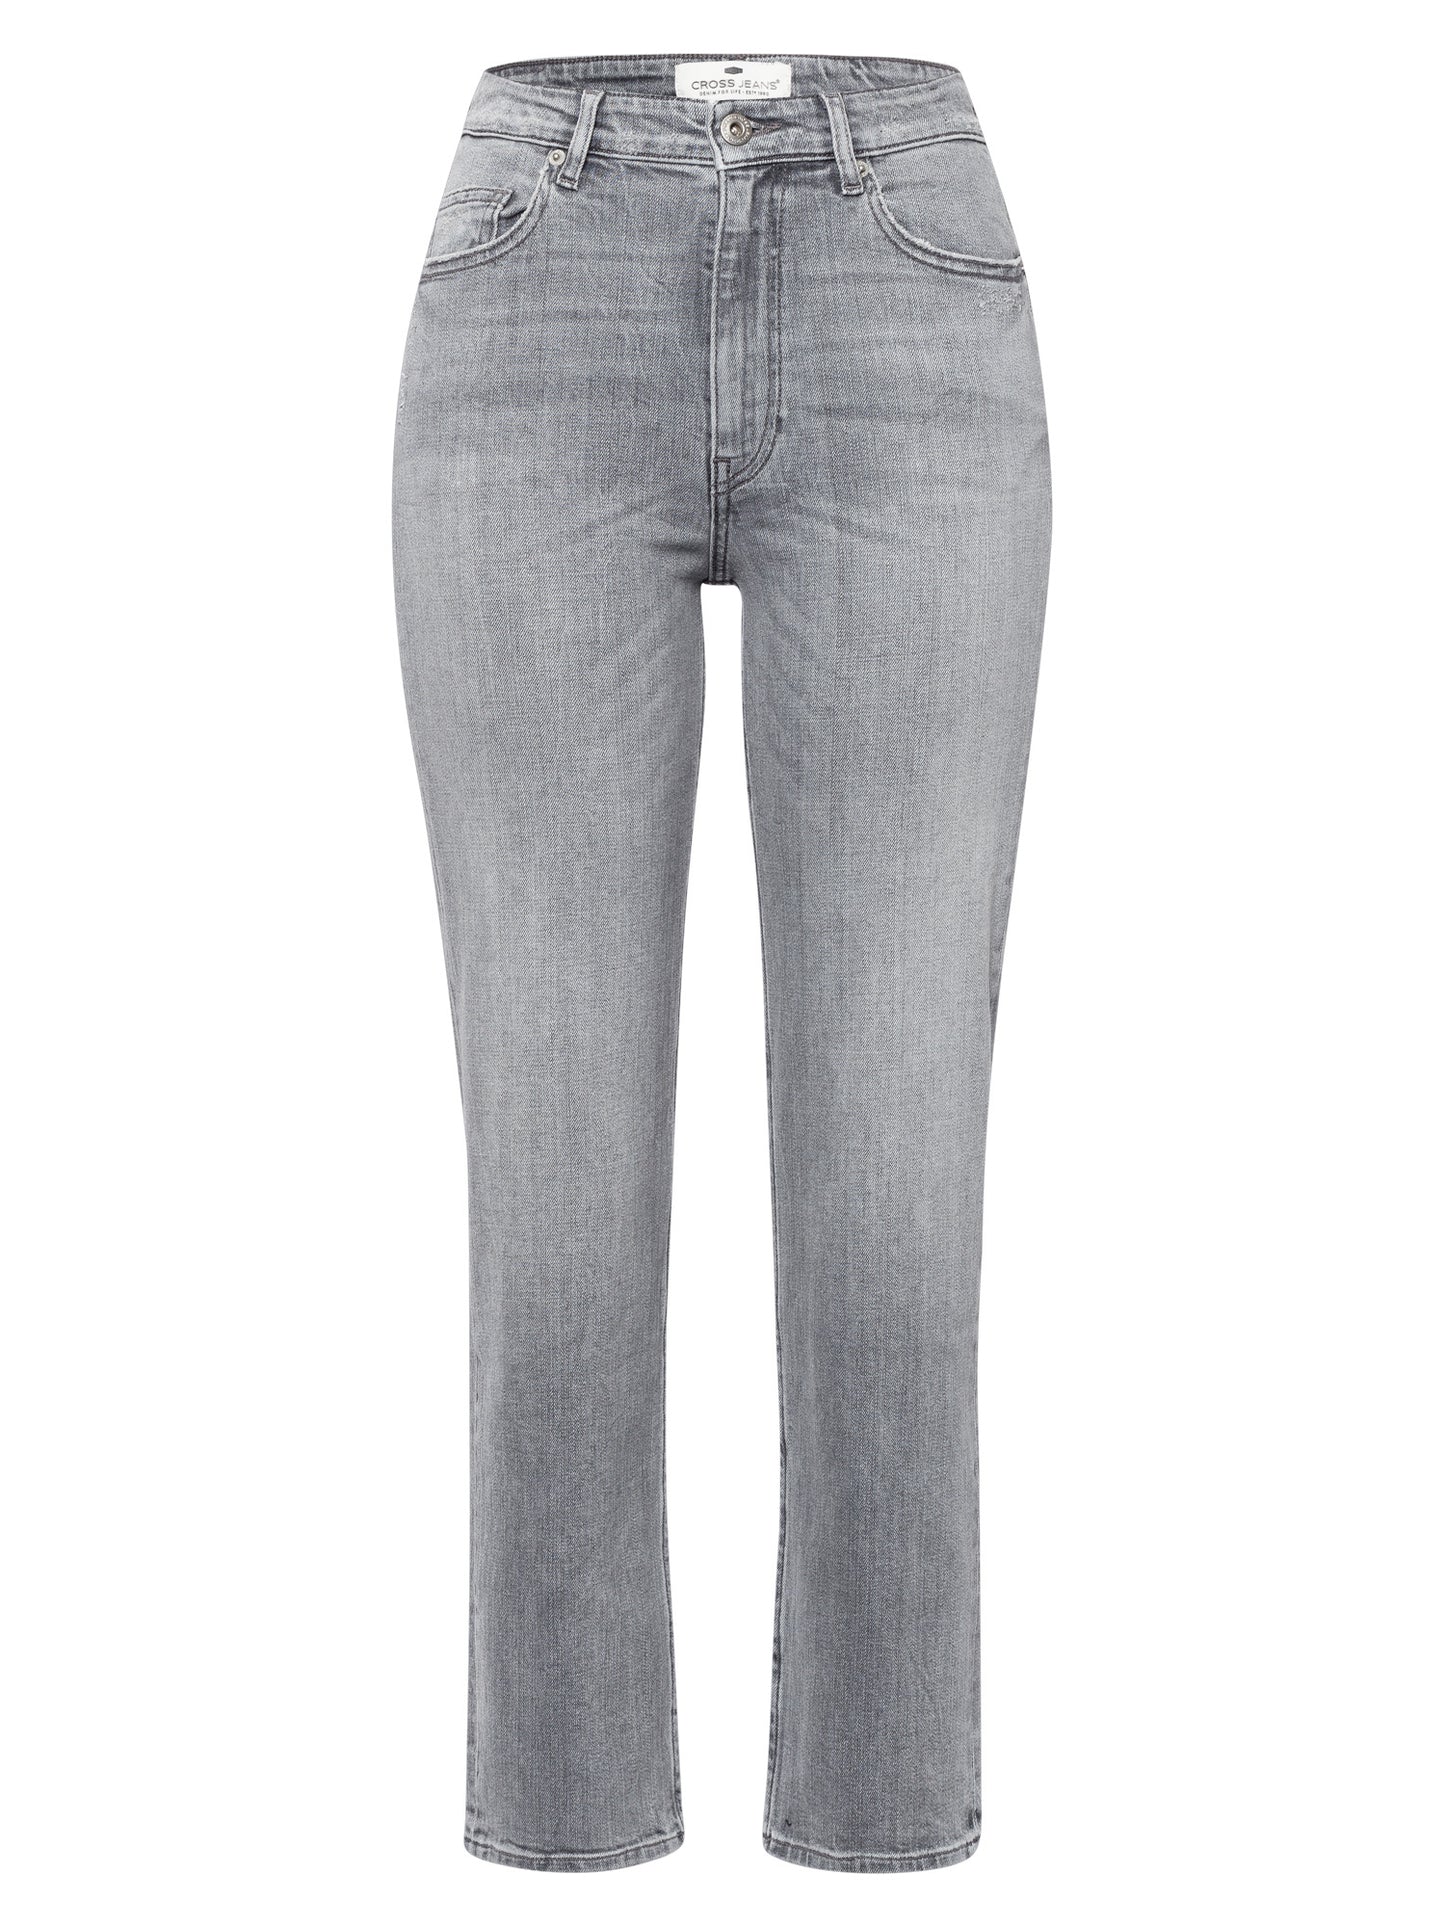 Marisa Damen Jeans Regular Fit High Waist Straight Leg hellgrau